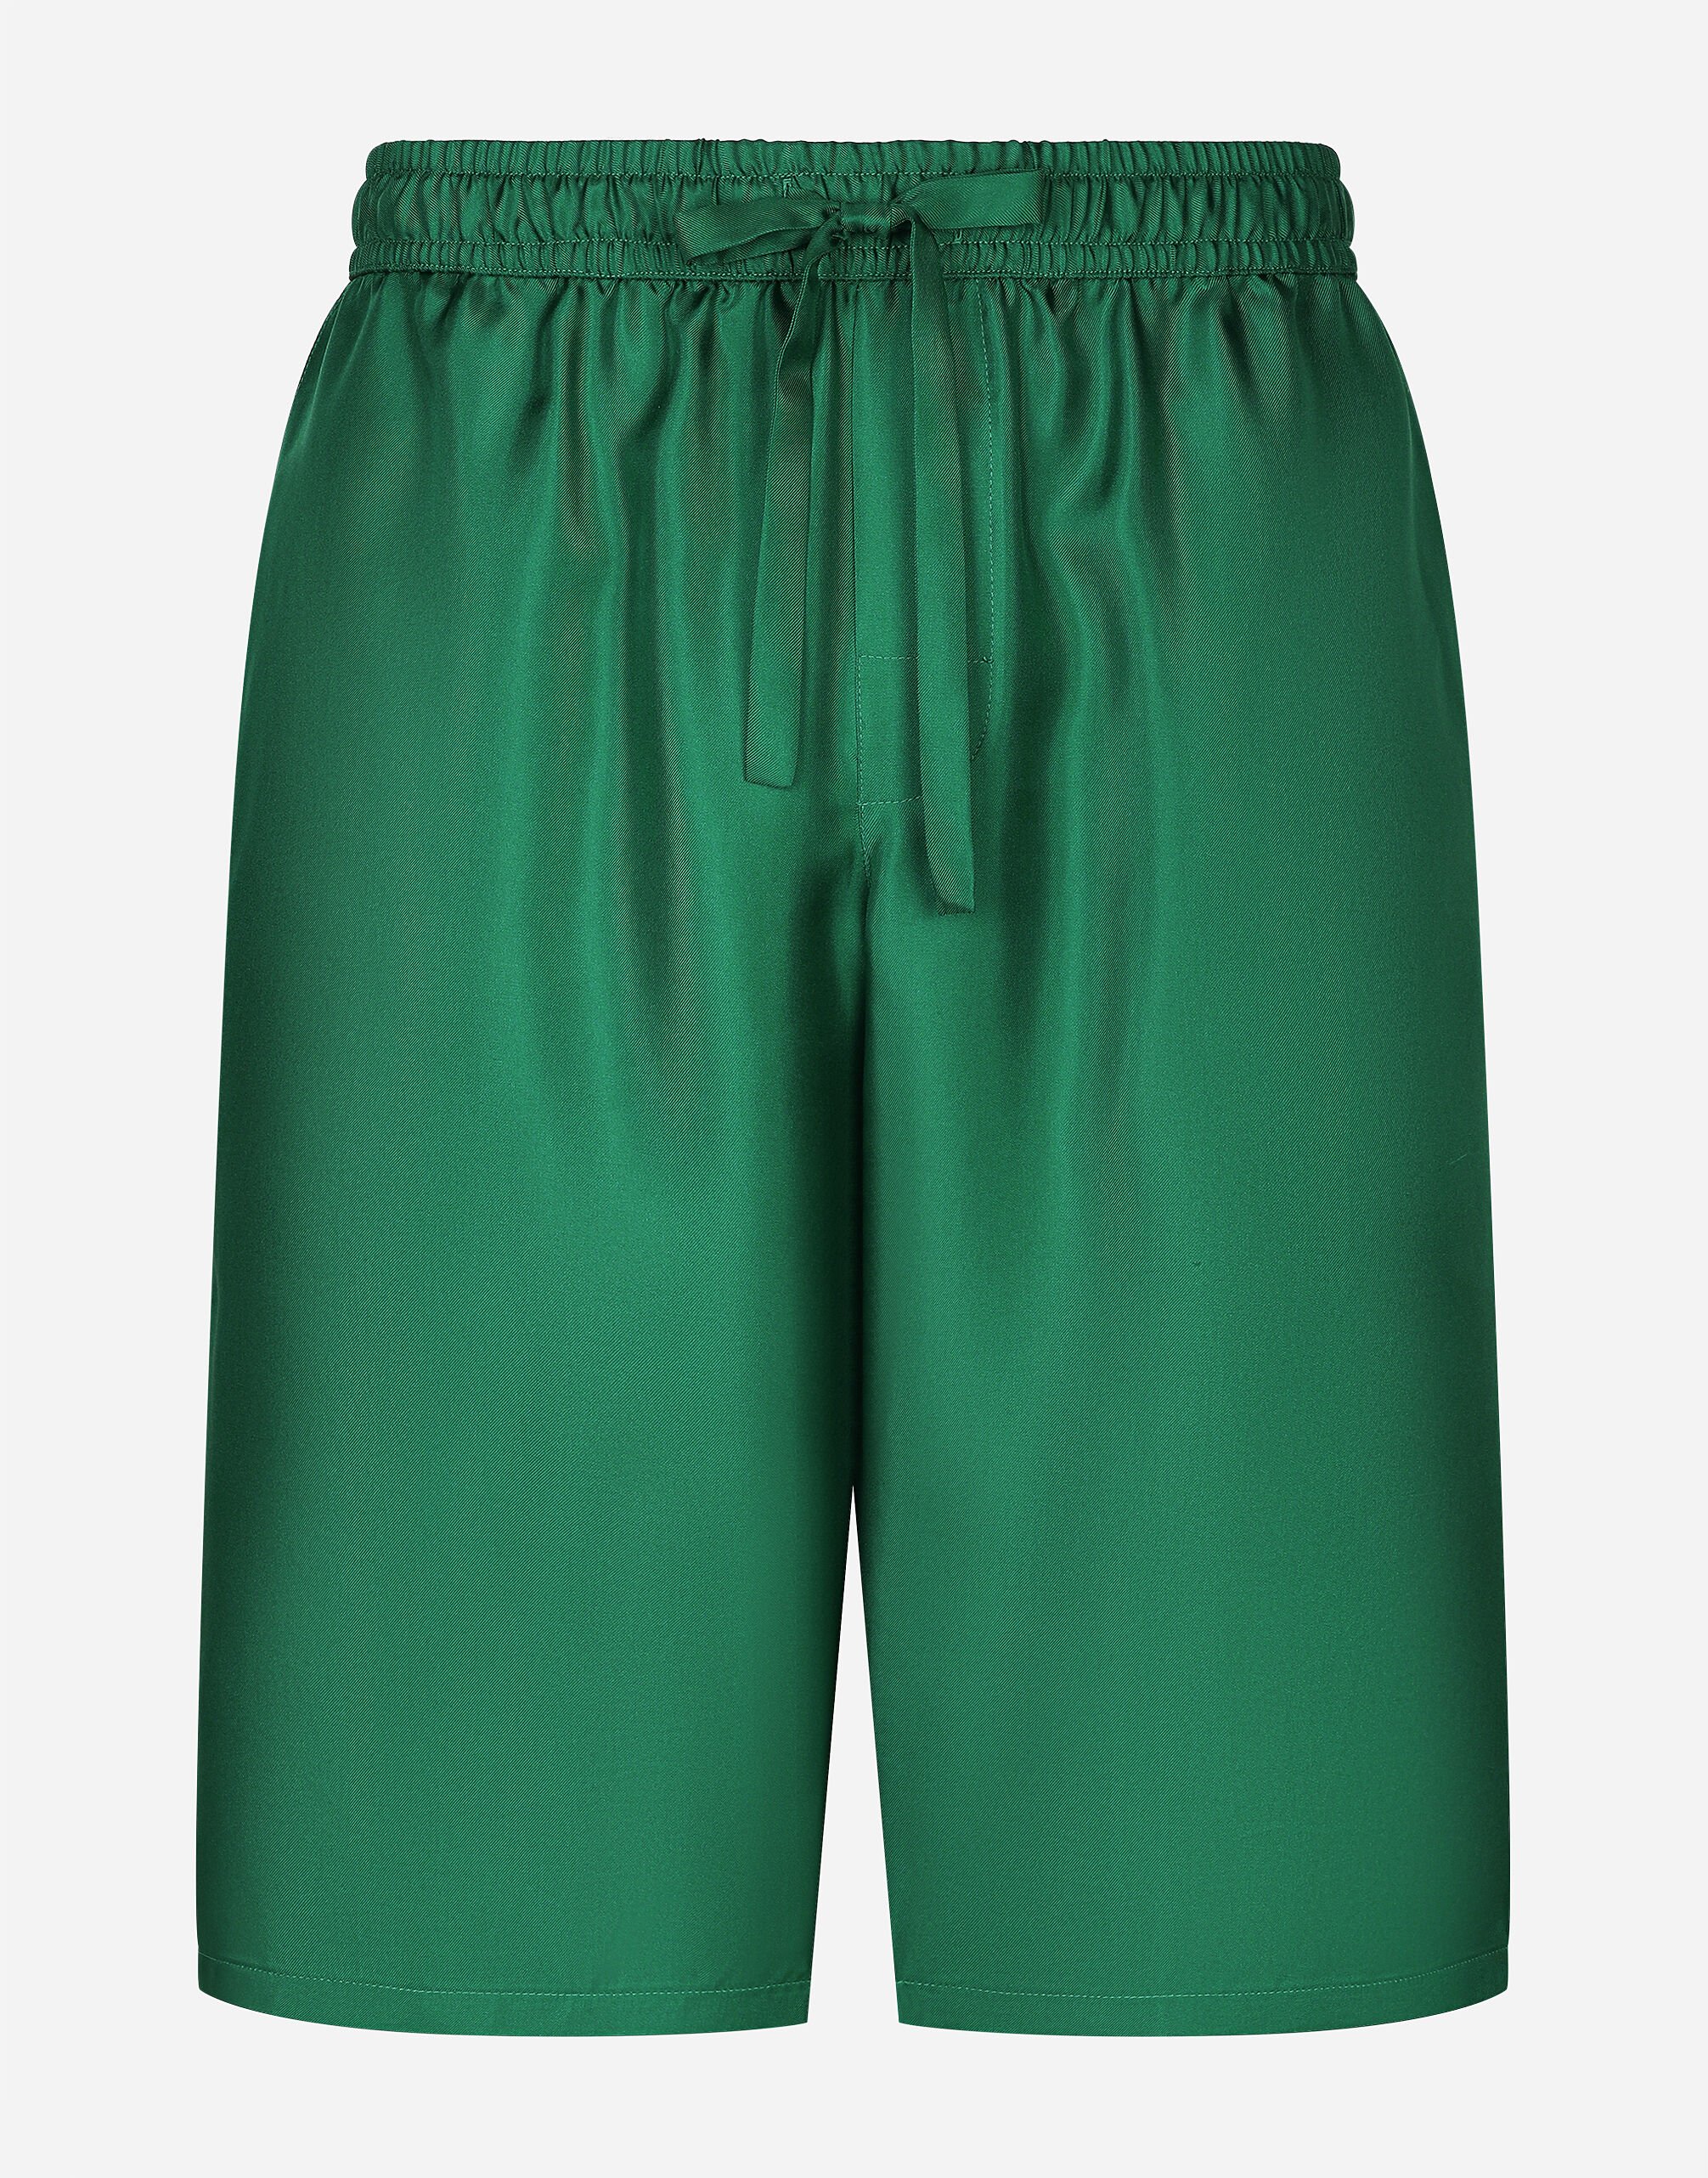 Dolce & Gabbana Embroidered silk jogging shorts Print G5JH9TFI5JO